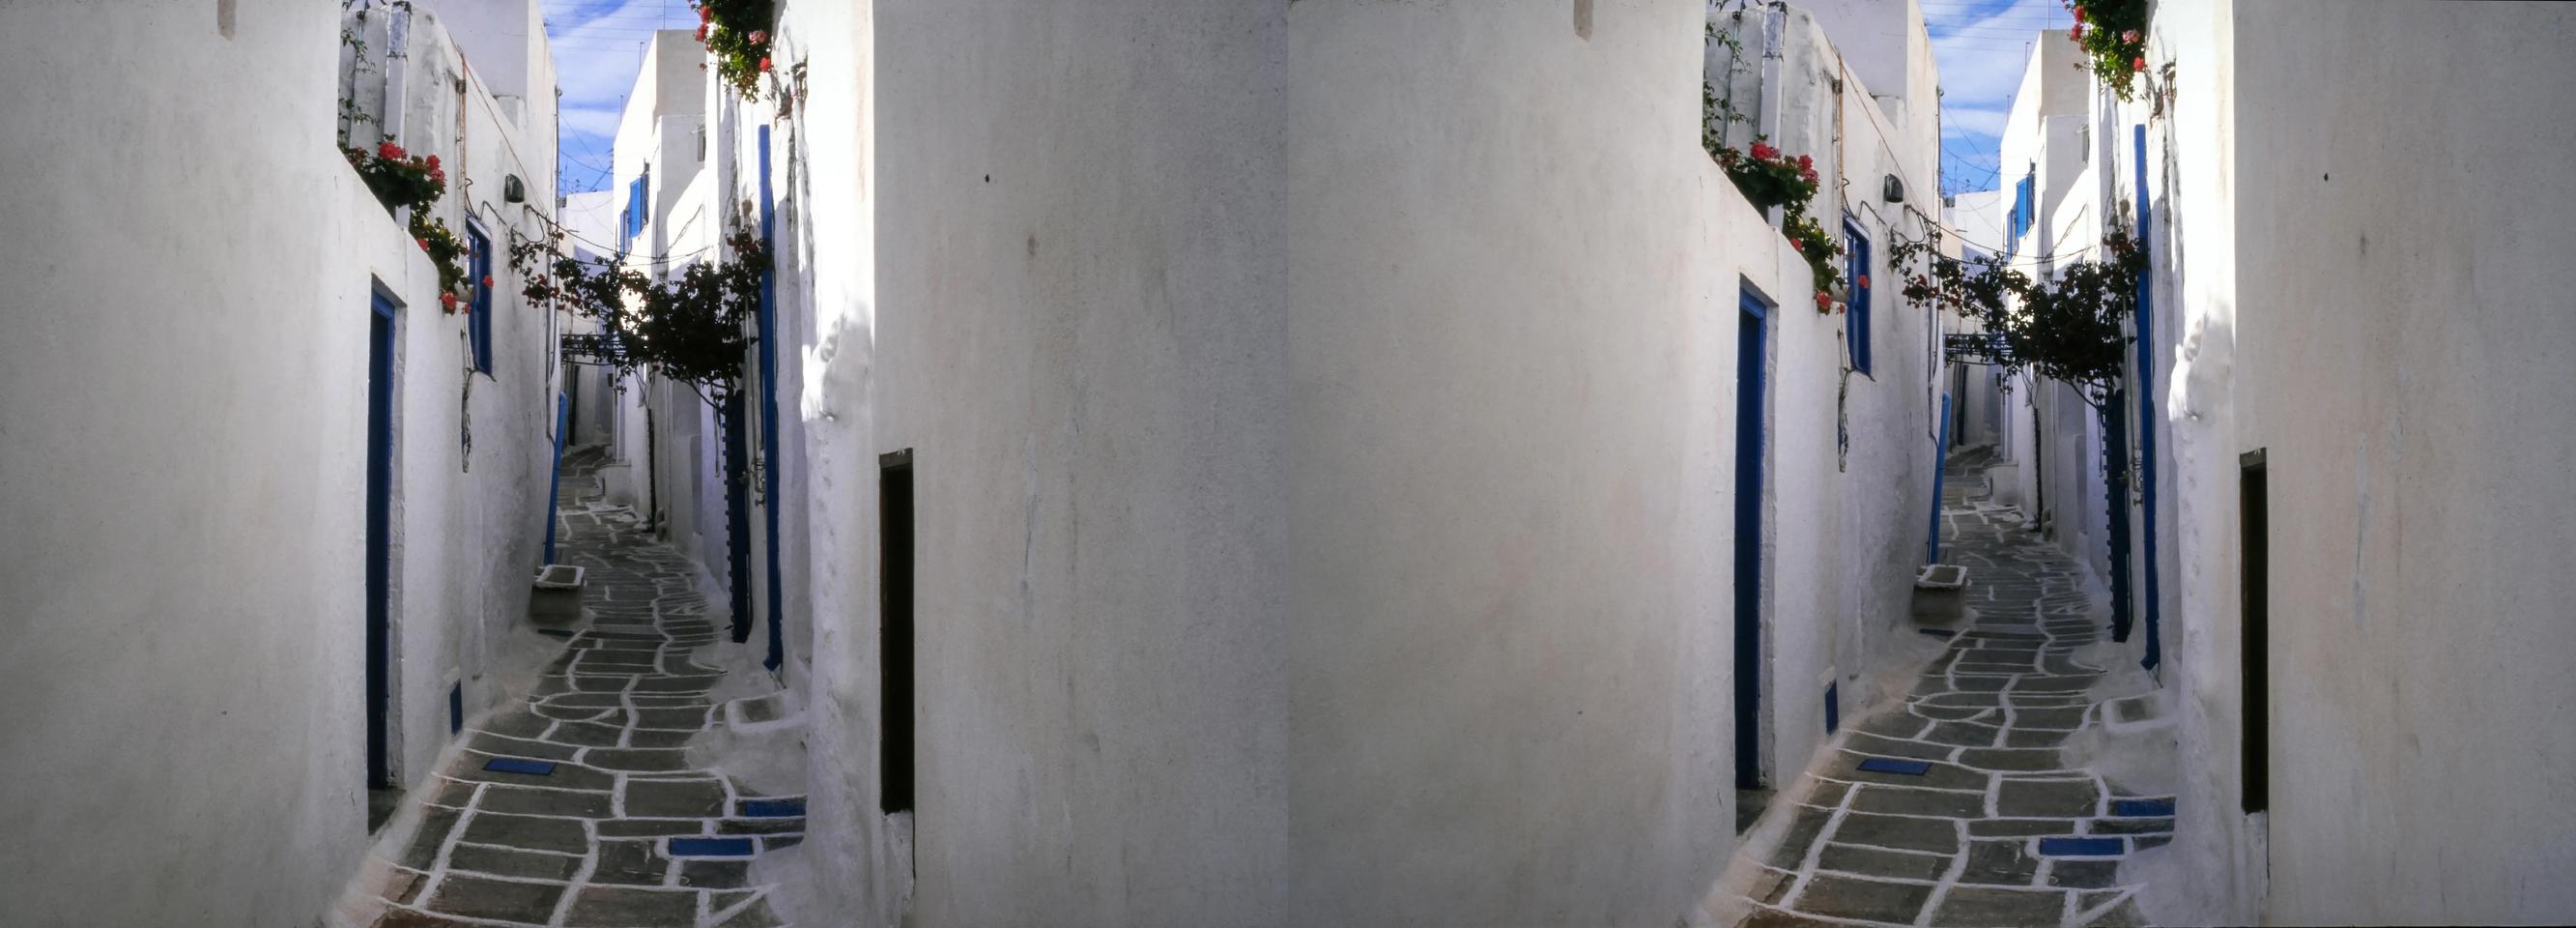 Naxos island, Greece. 1998